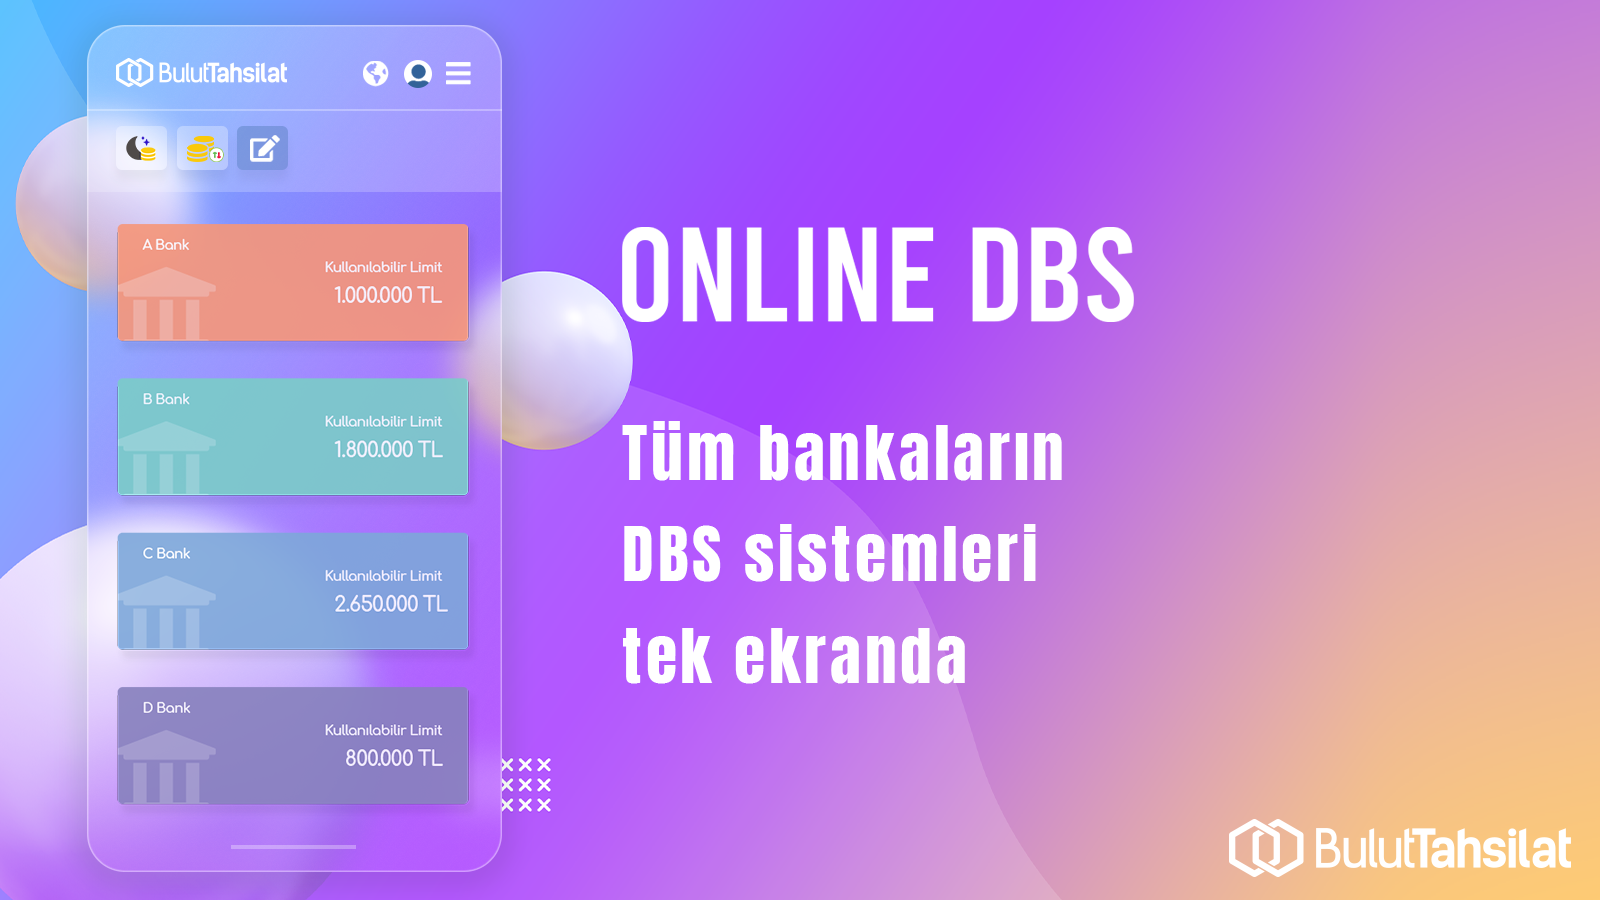 Online DBS(Doğrudan Borçlandırma Servisi)